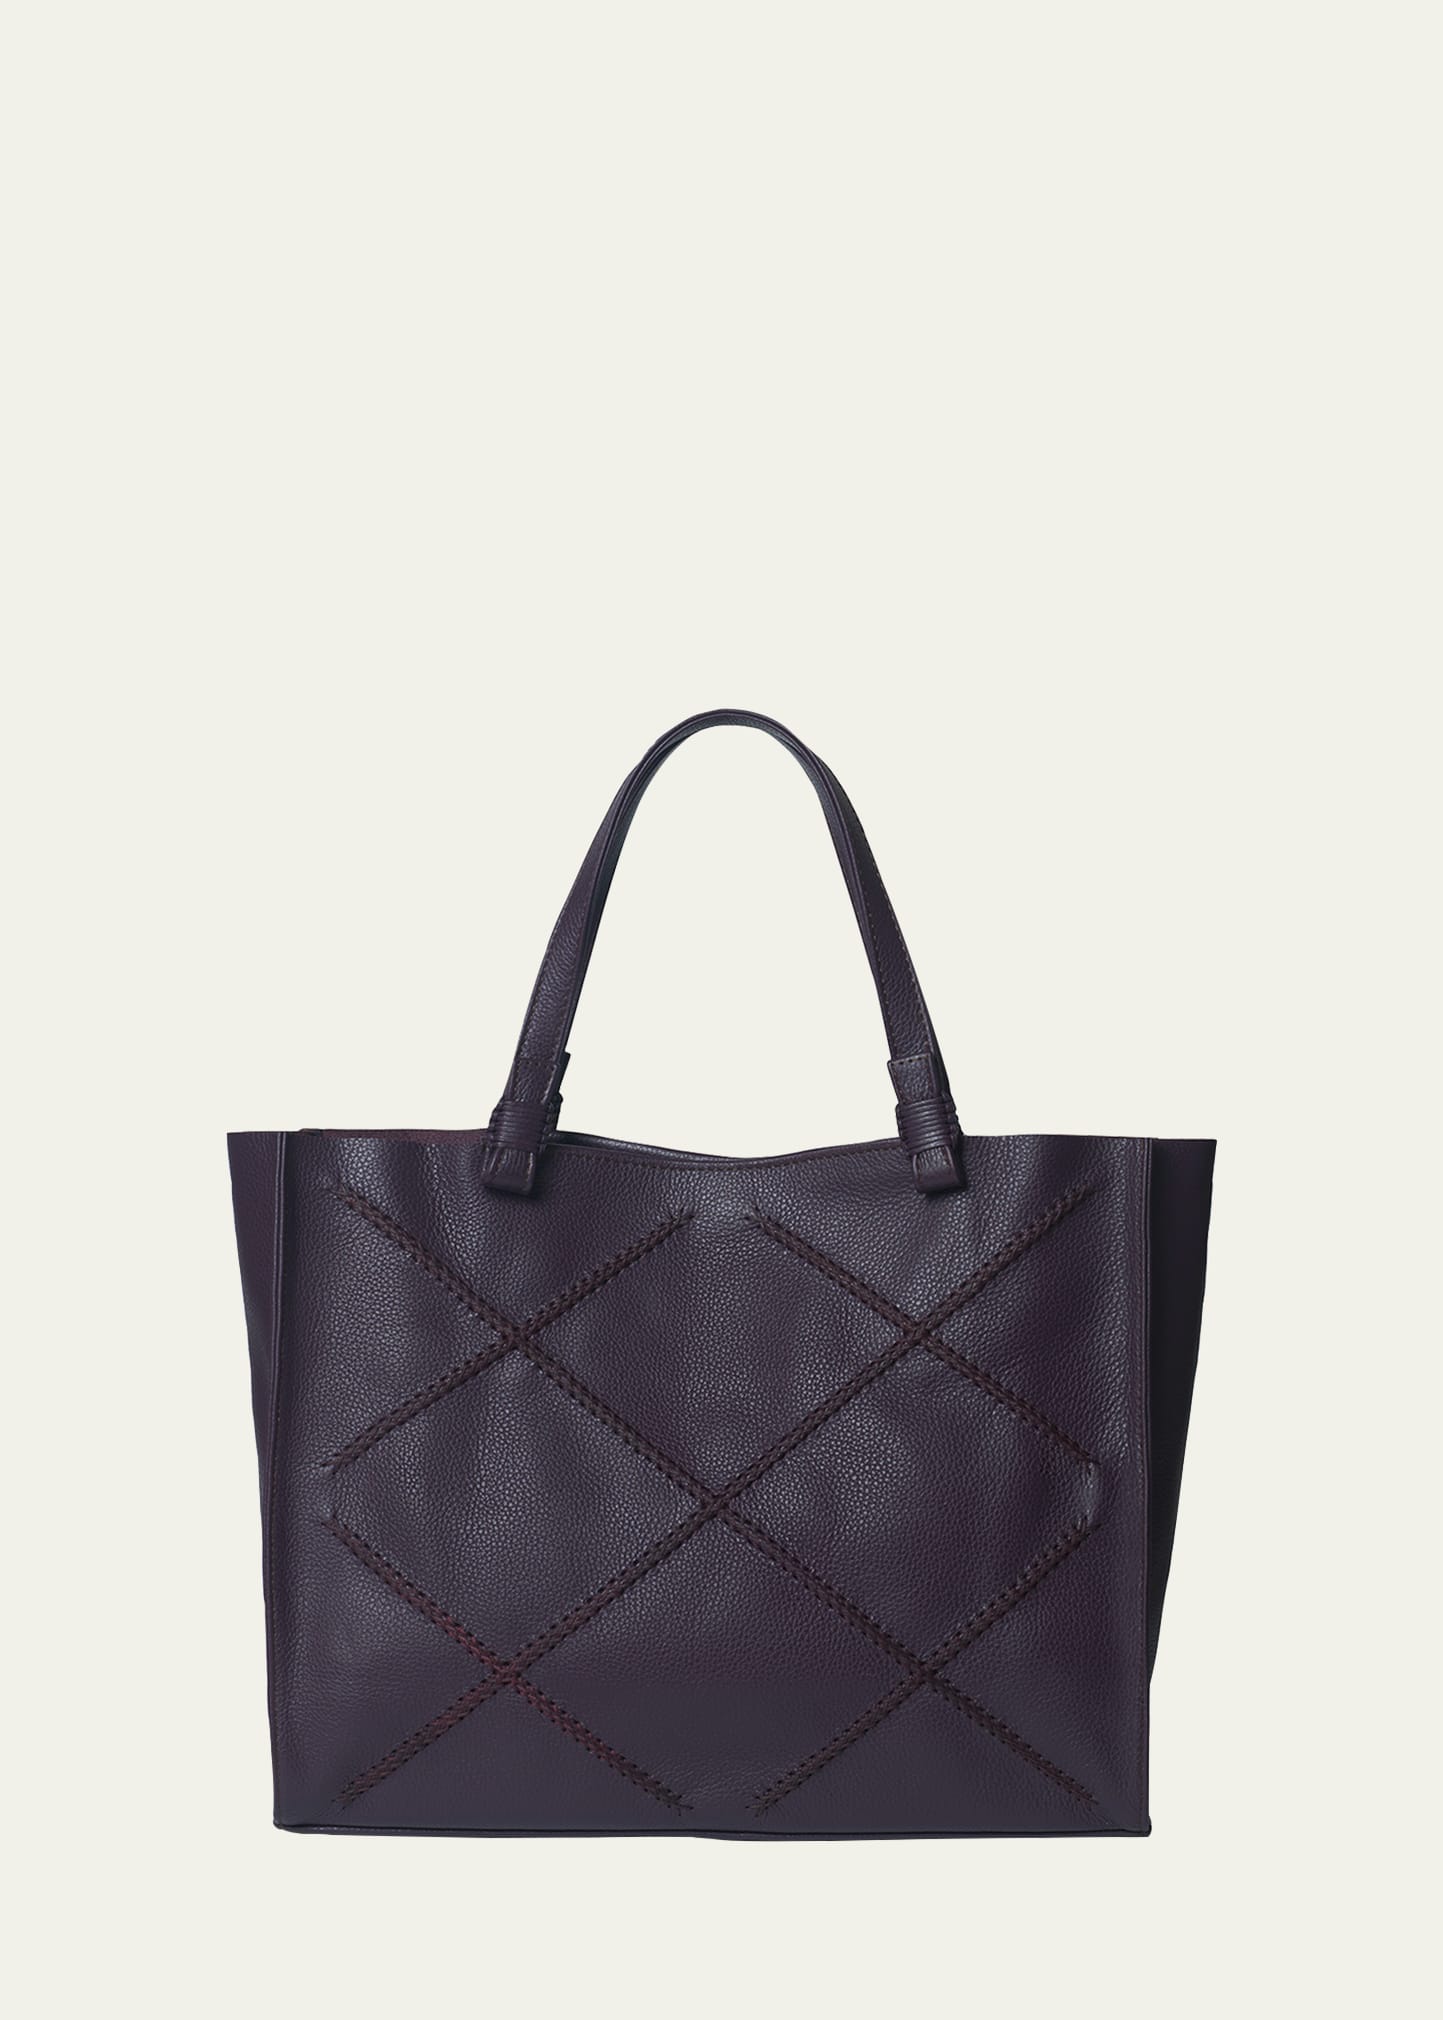 Callista Medium Leather Tote Bag In Plum